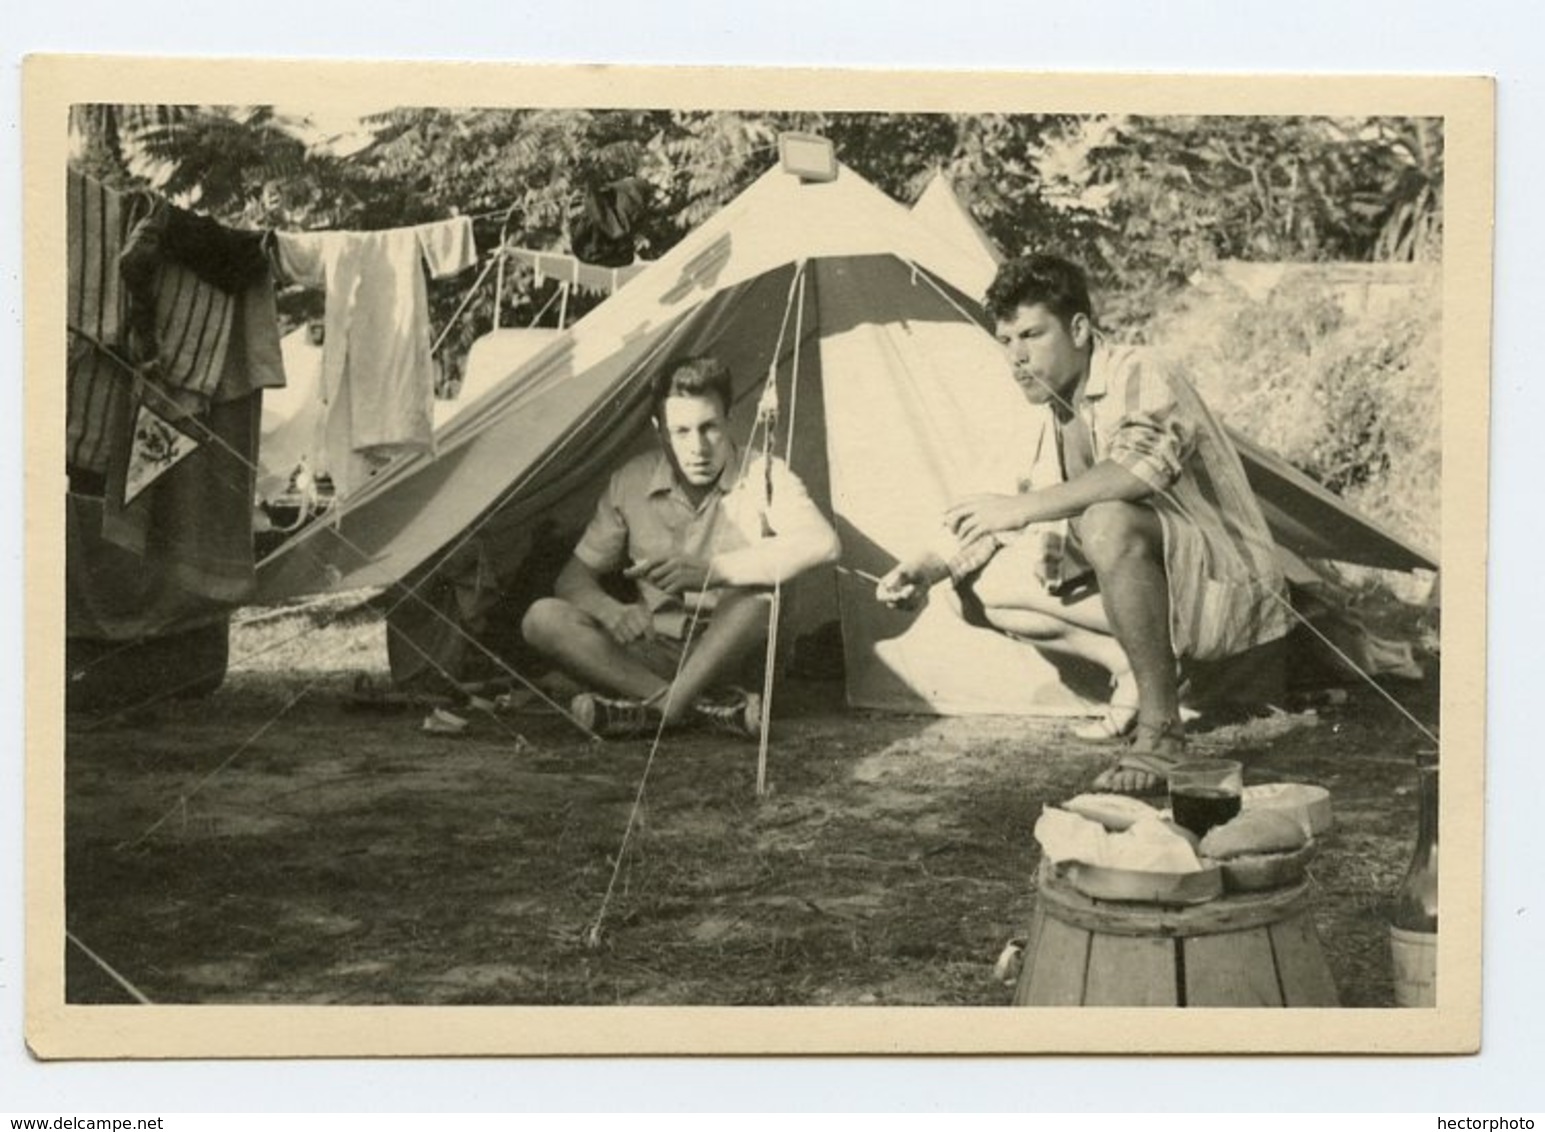 Homme Man Vacances Camping Tente Bon Temps Pique Nique Linge Soleil Playboy Gay Camp 50s Amateur Tent - Personas Anónimos